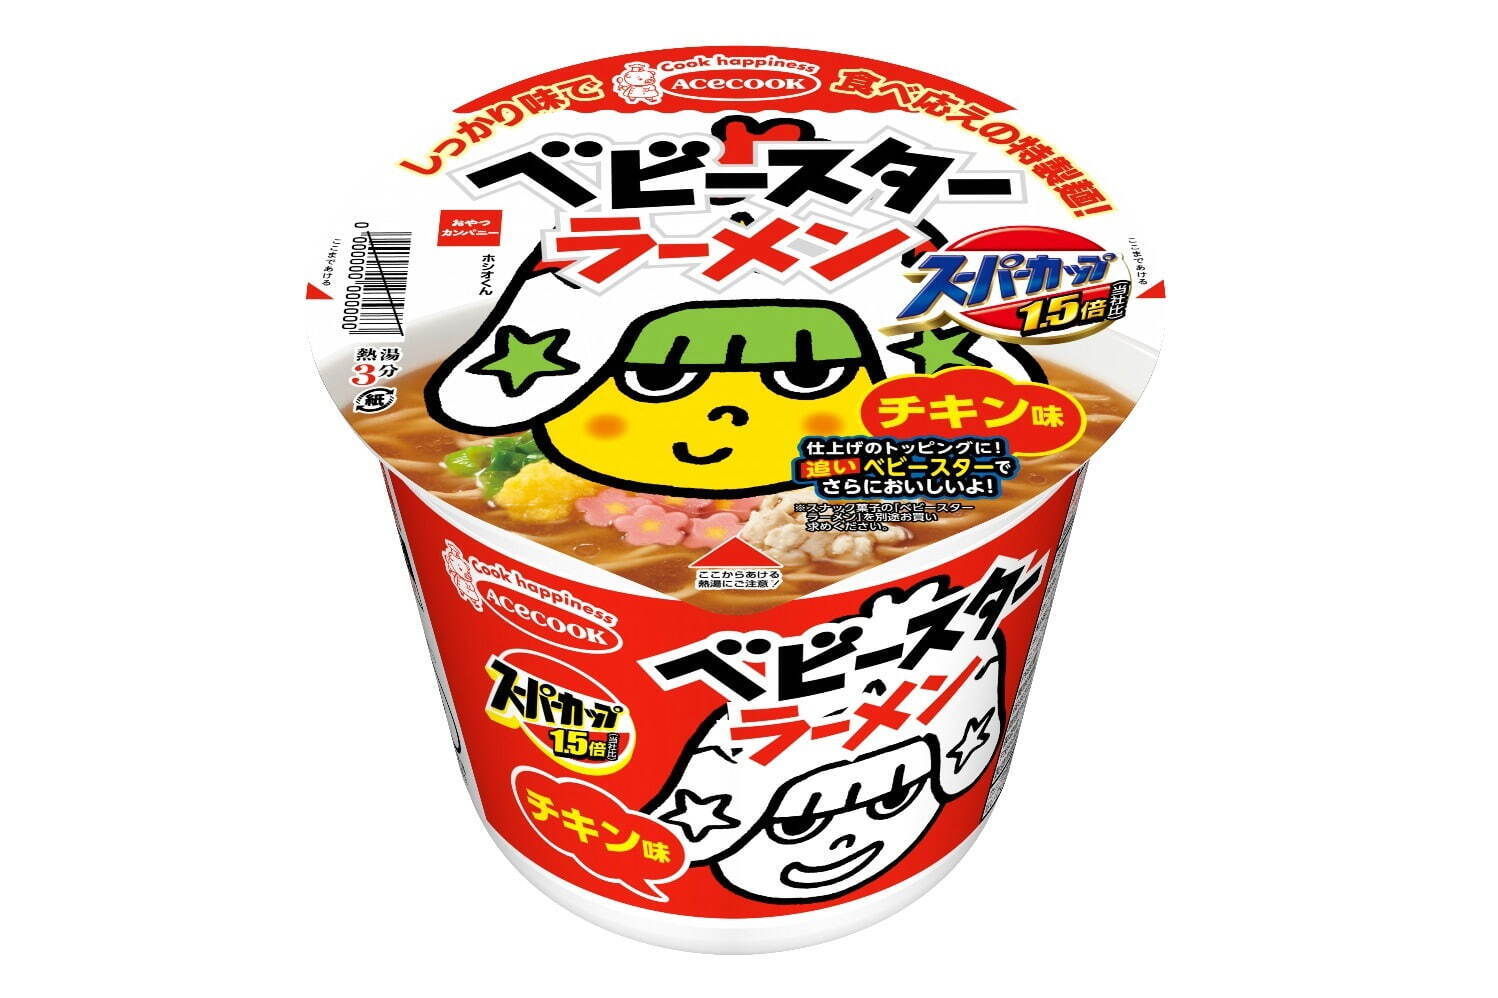 「スーパーカップ1.5倍 ベビースターラーメン チキン味」 231円